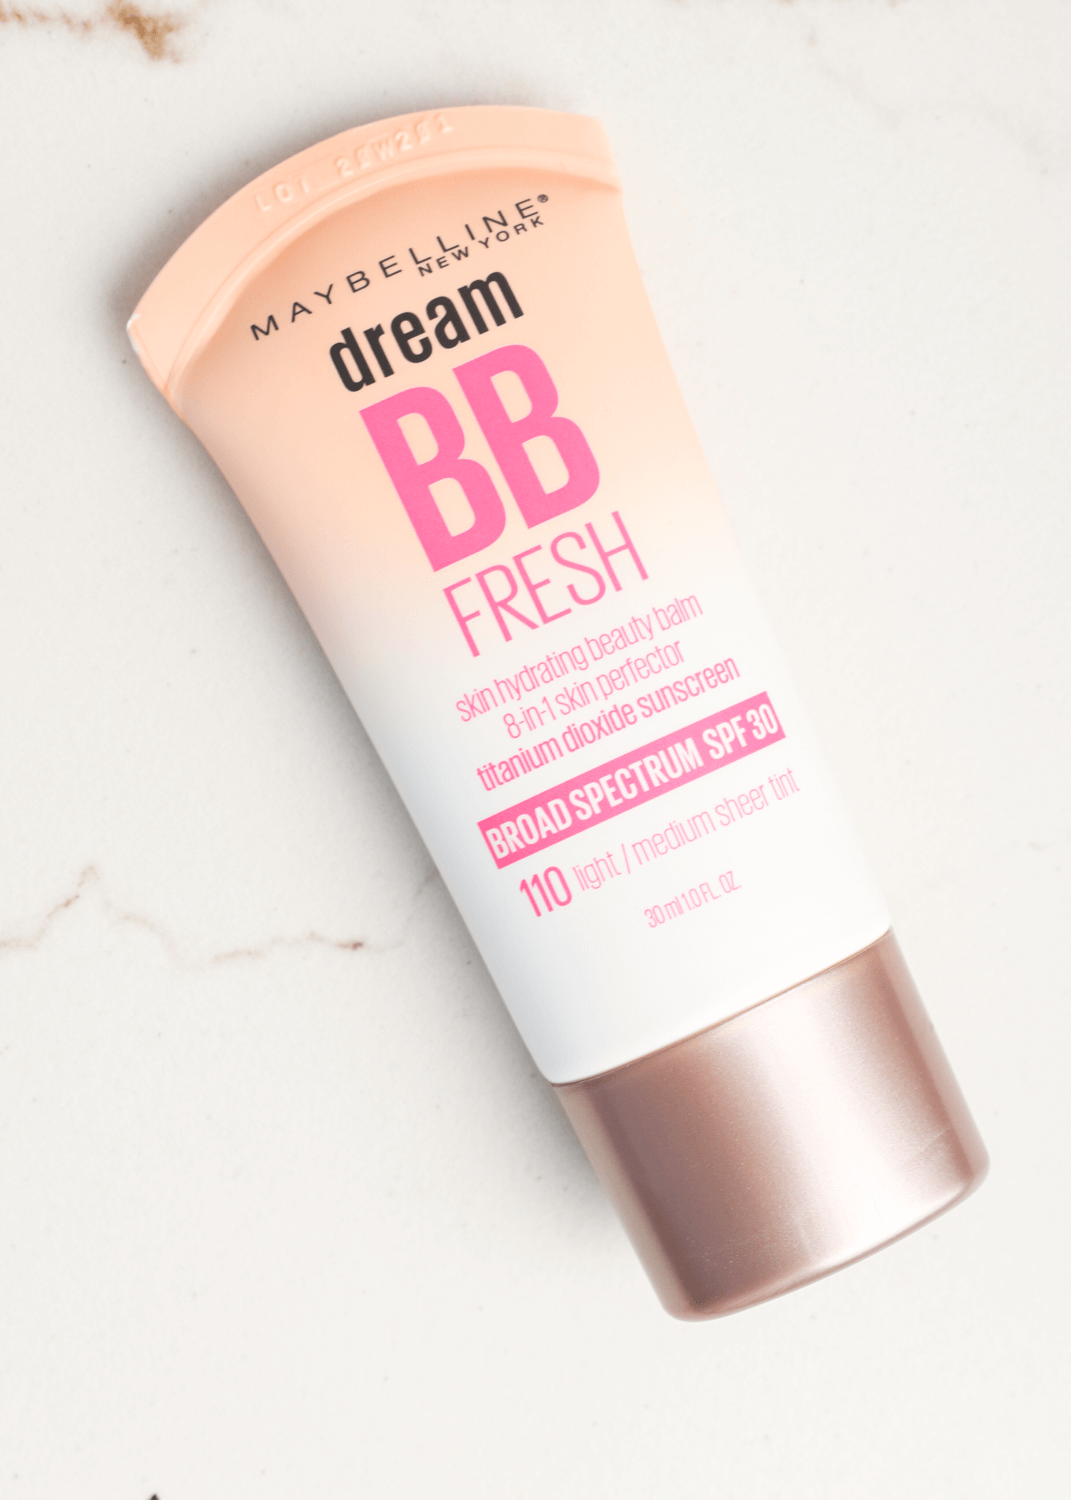 Dream BB fresh Cream precio